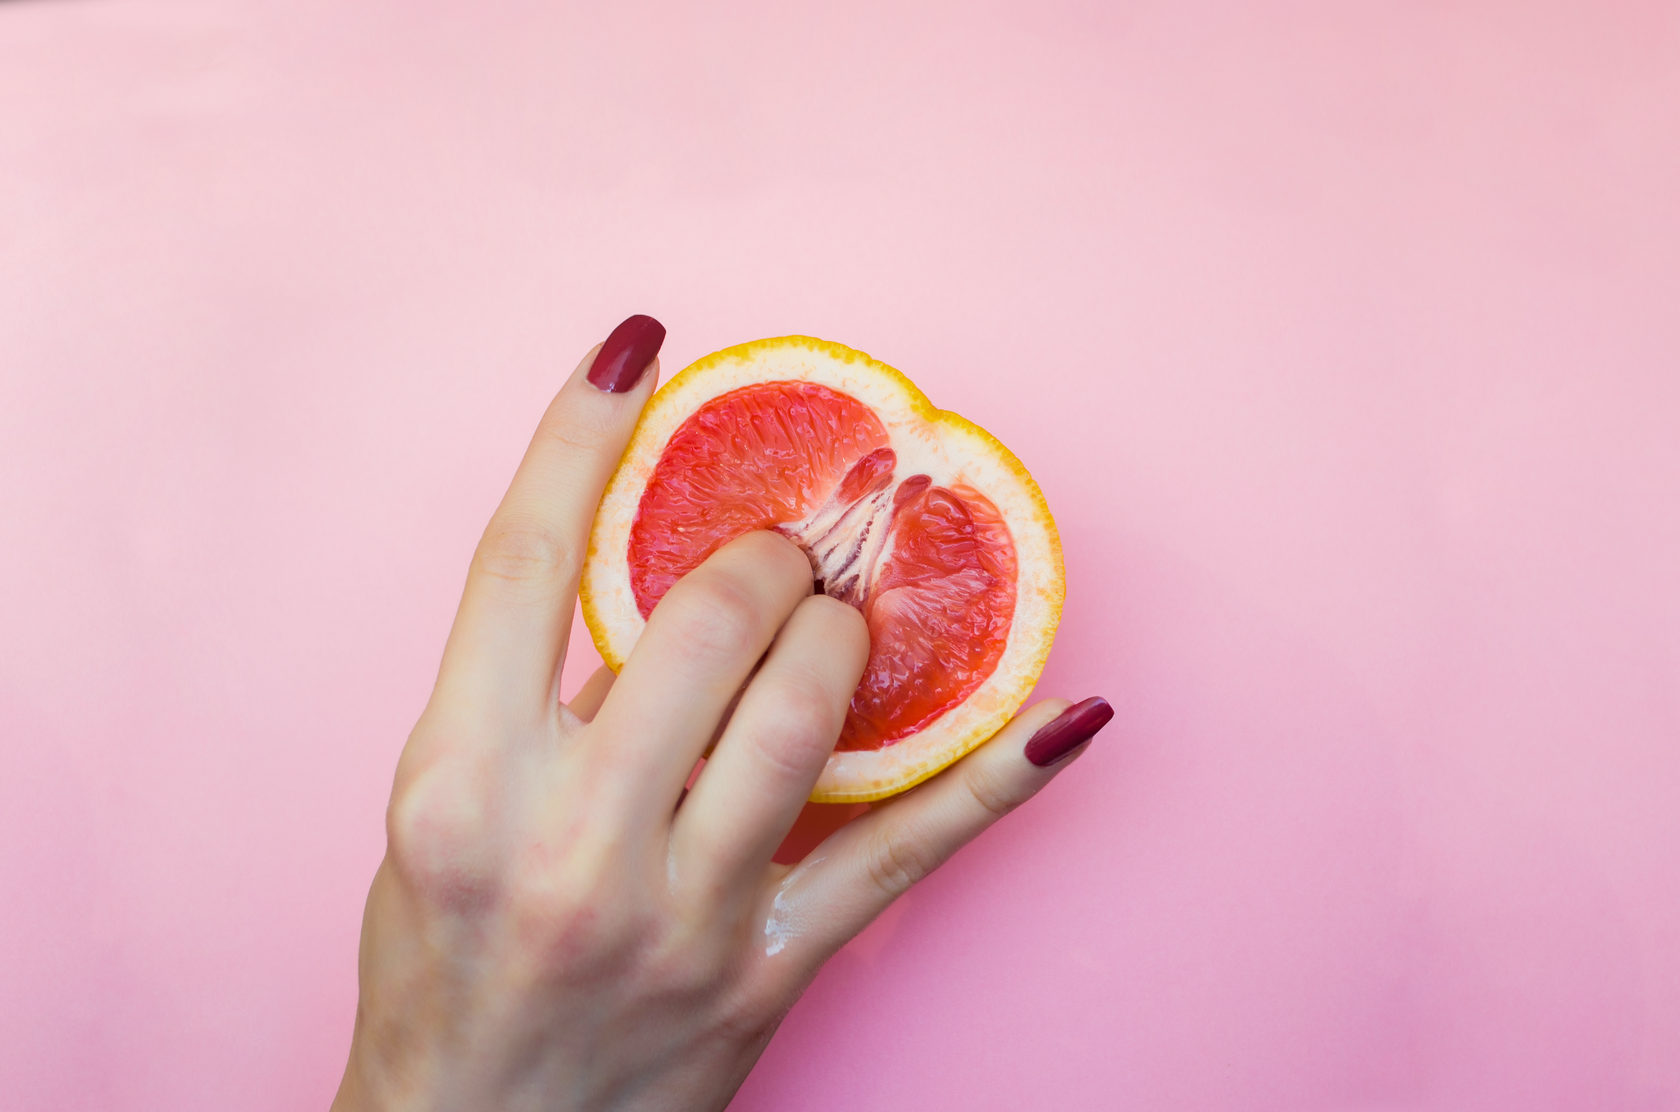 два женских пальца в грейпфруте